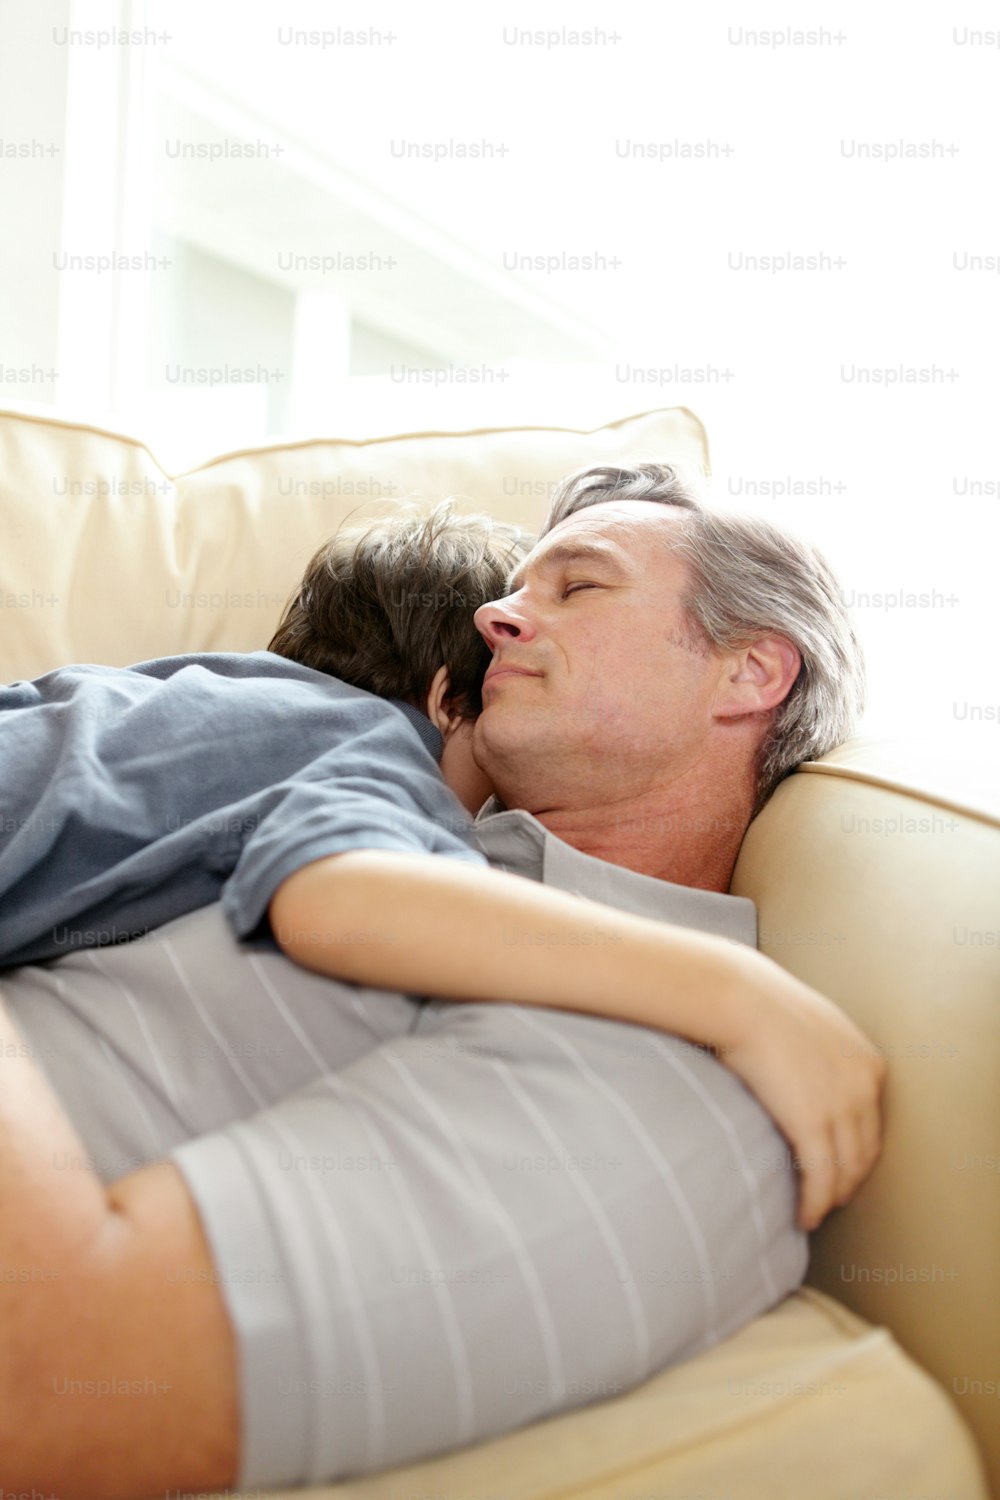 Un padre y un hijo durmiendo juntos en el sofá del salón después de un día activo